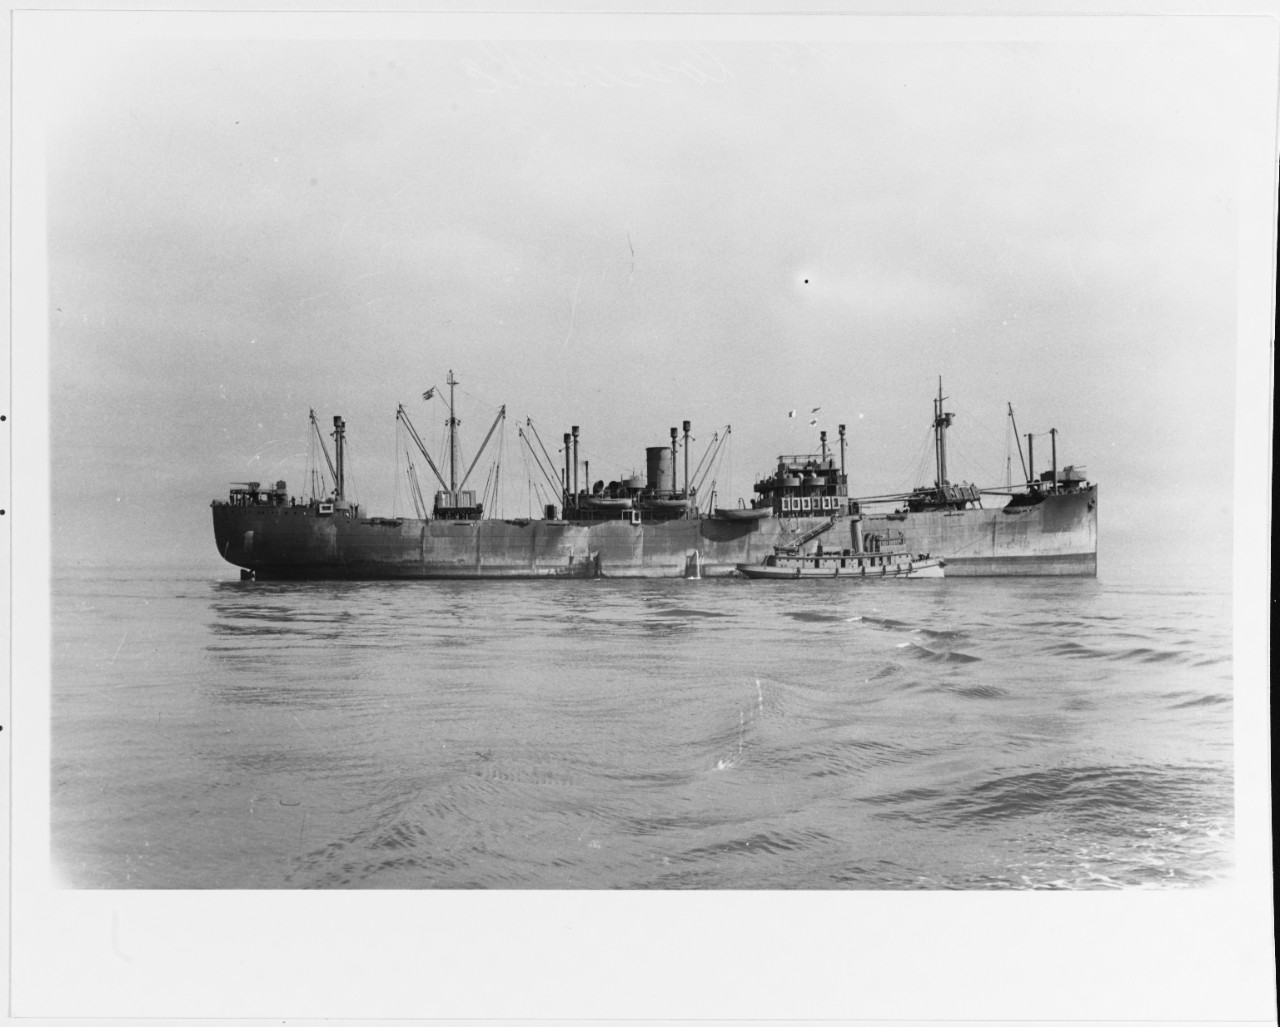 M.S. ROSEVILLE (Norwegian Merchant Cargo Ship, 1930-1971)